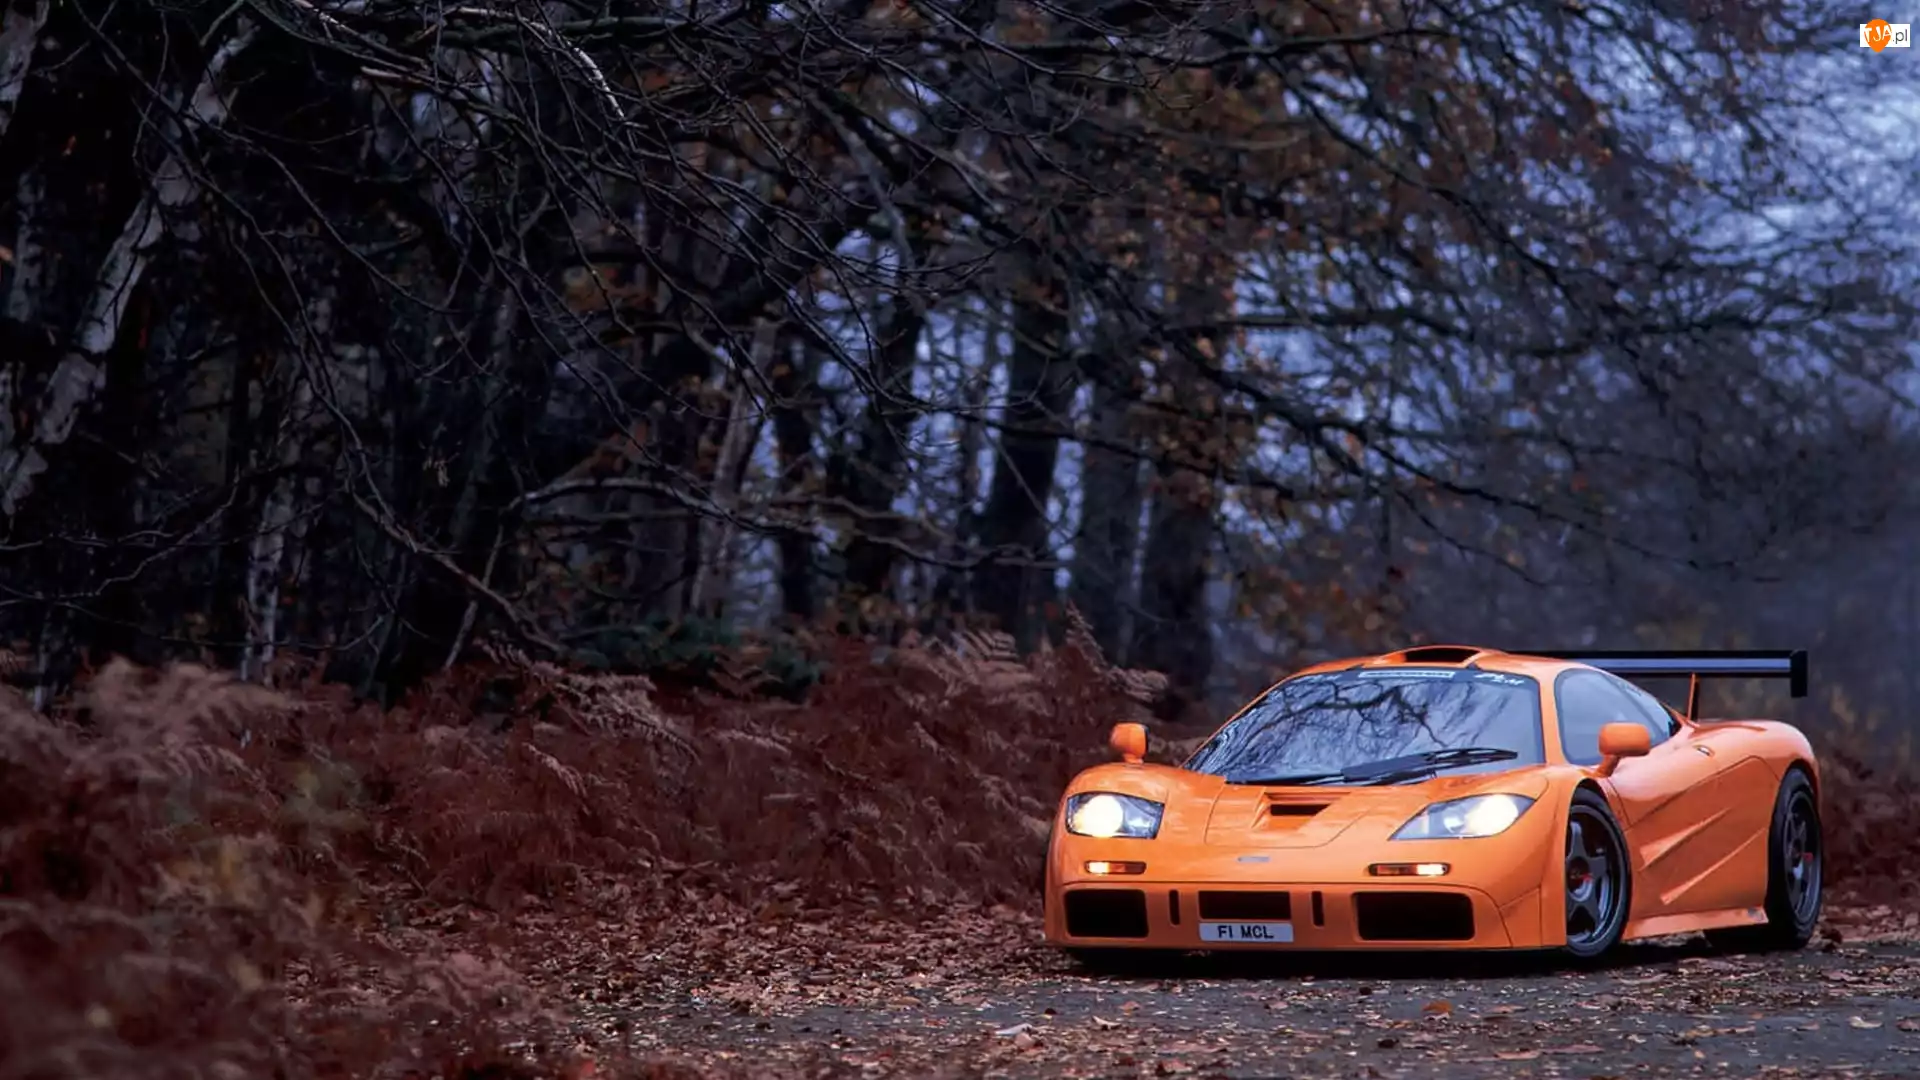 Samochód McLaren F1 na ścieżce w jesiennym lesie